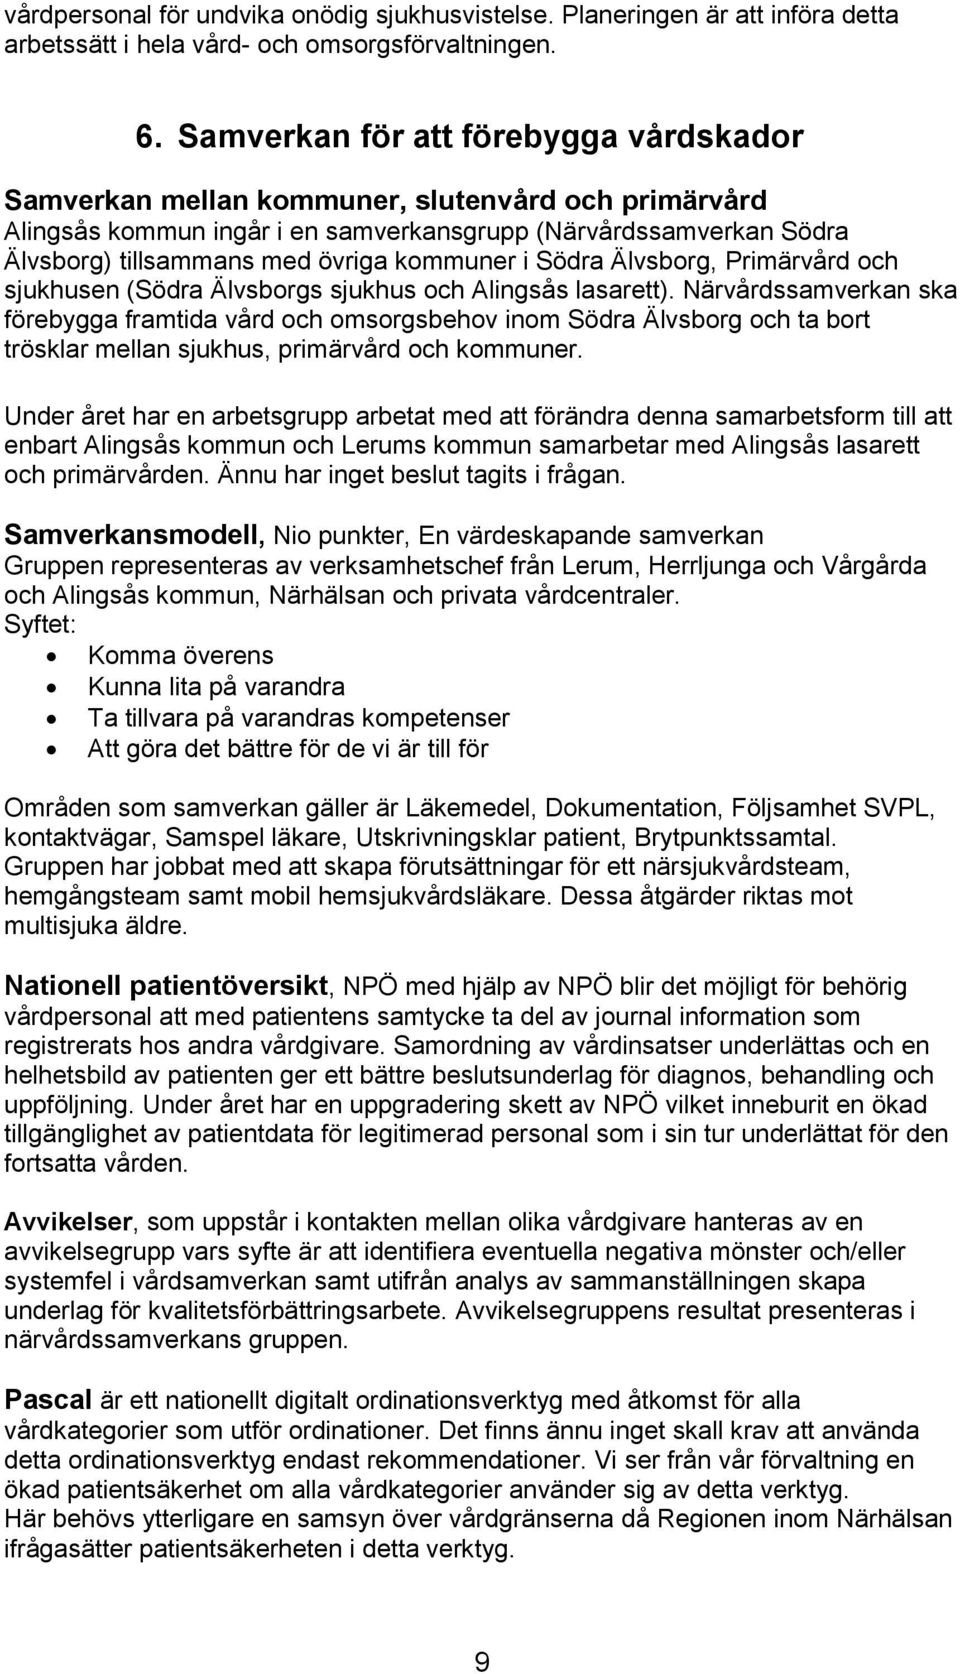 kommuner i Södra Älvsborg, Primärvård och sjukhusen (Södra Älvsborgs sjukhus och Alingsås lasarett).